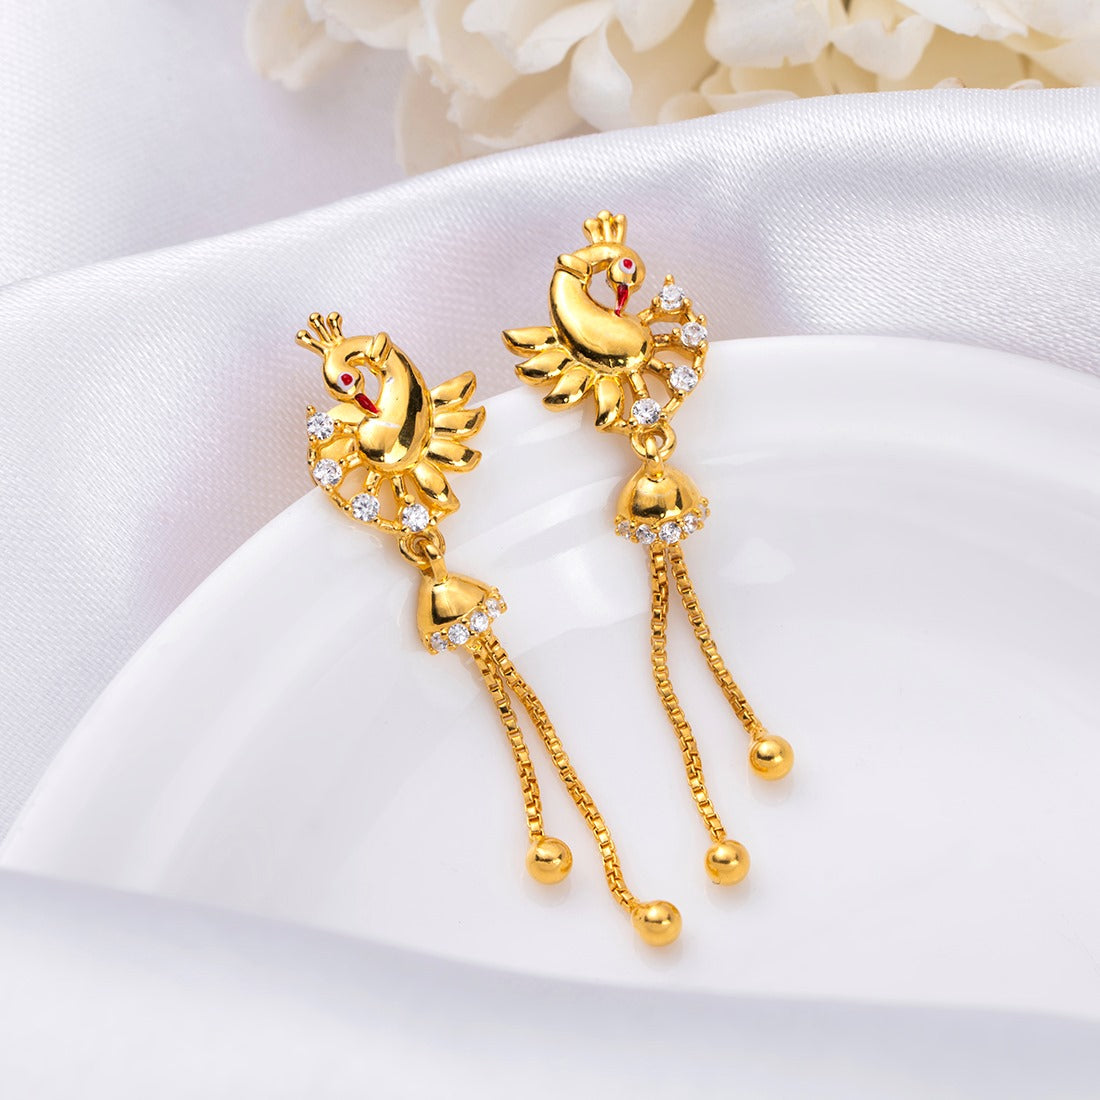 Golden Peacock Splendor 925 Sterling Silver Gold-Plated Earrings